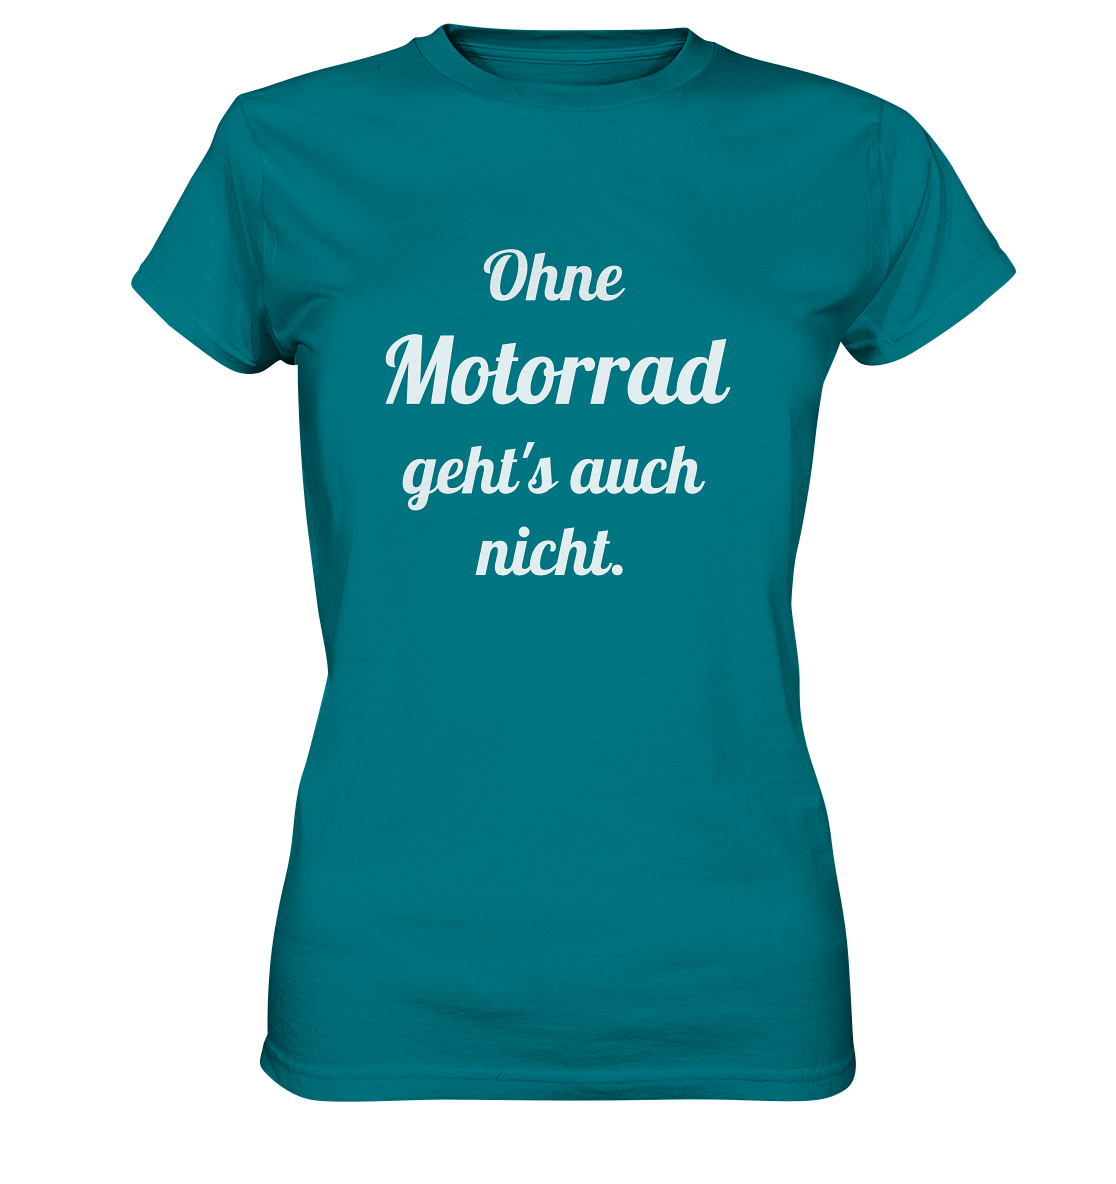 Damen-T-Shirt, Rundhals mit Aufdruck "Ohne Motorrad geht's auch nicht", türkis